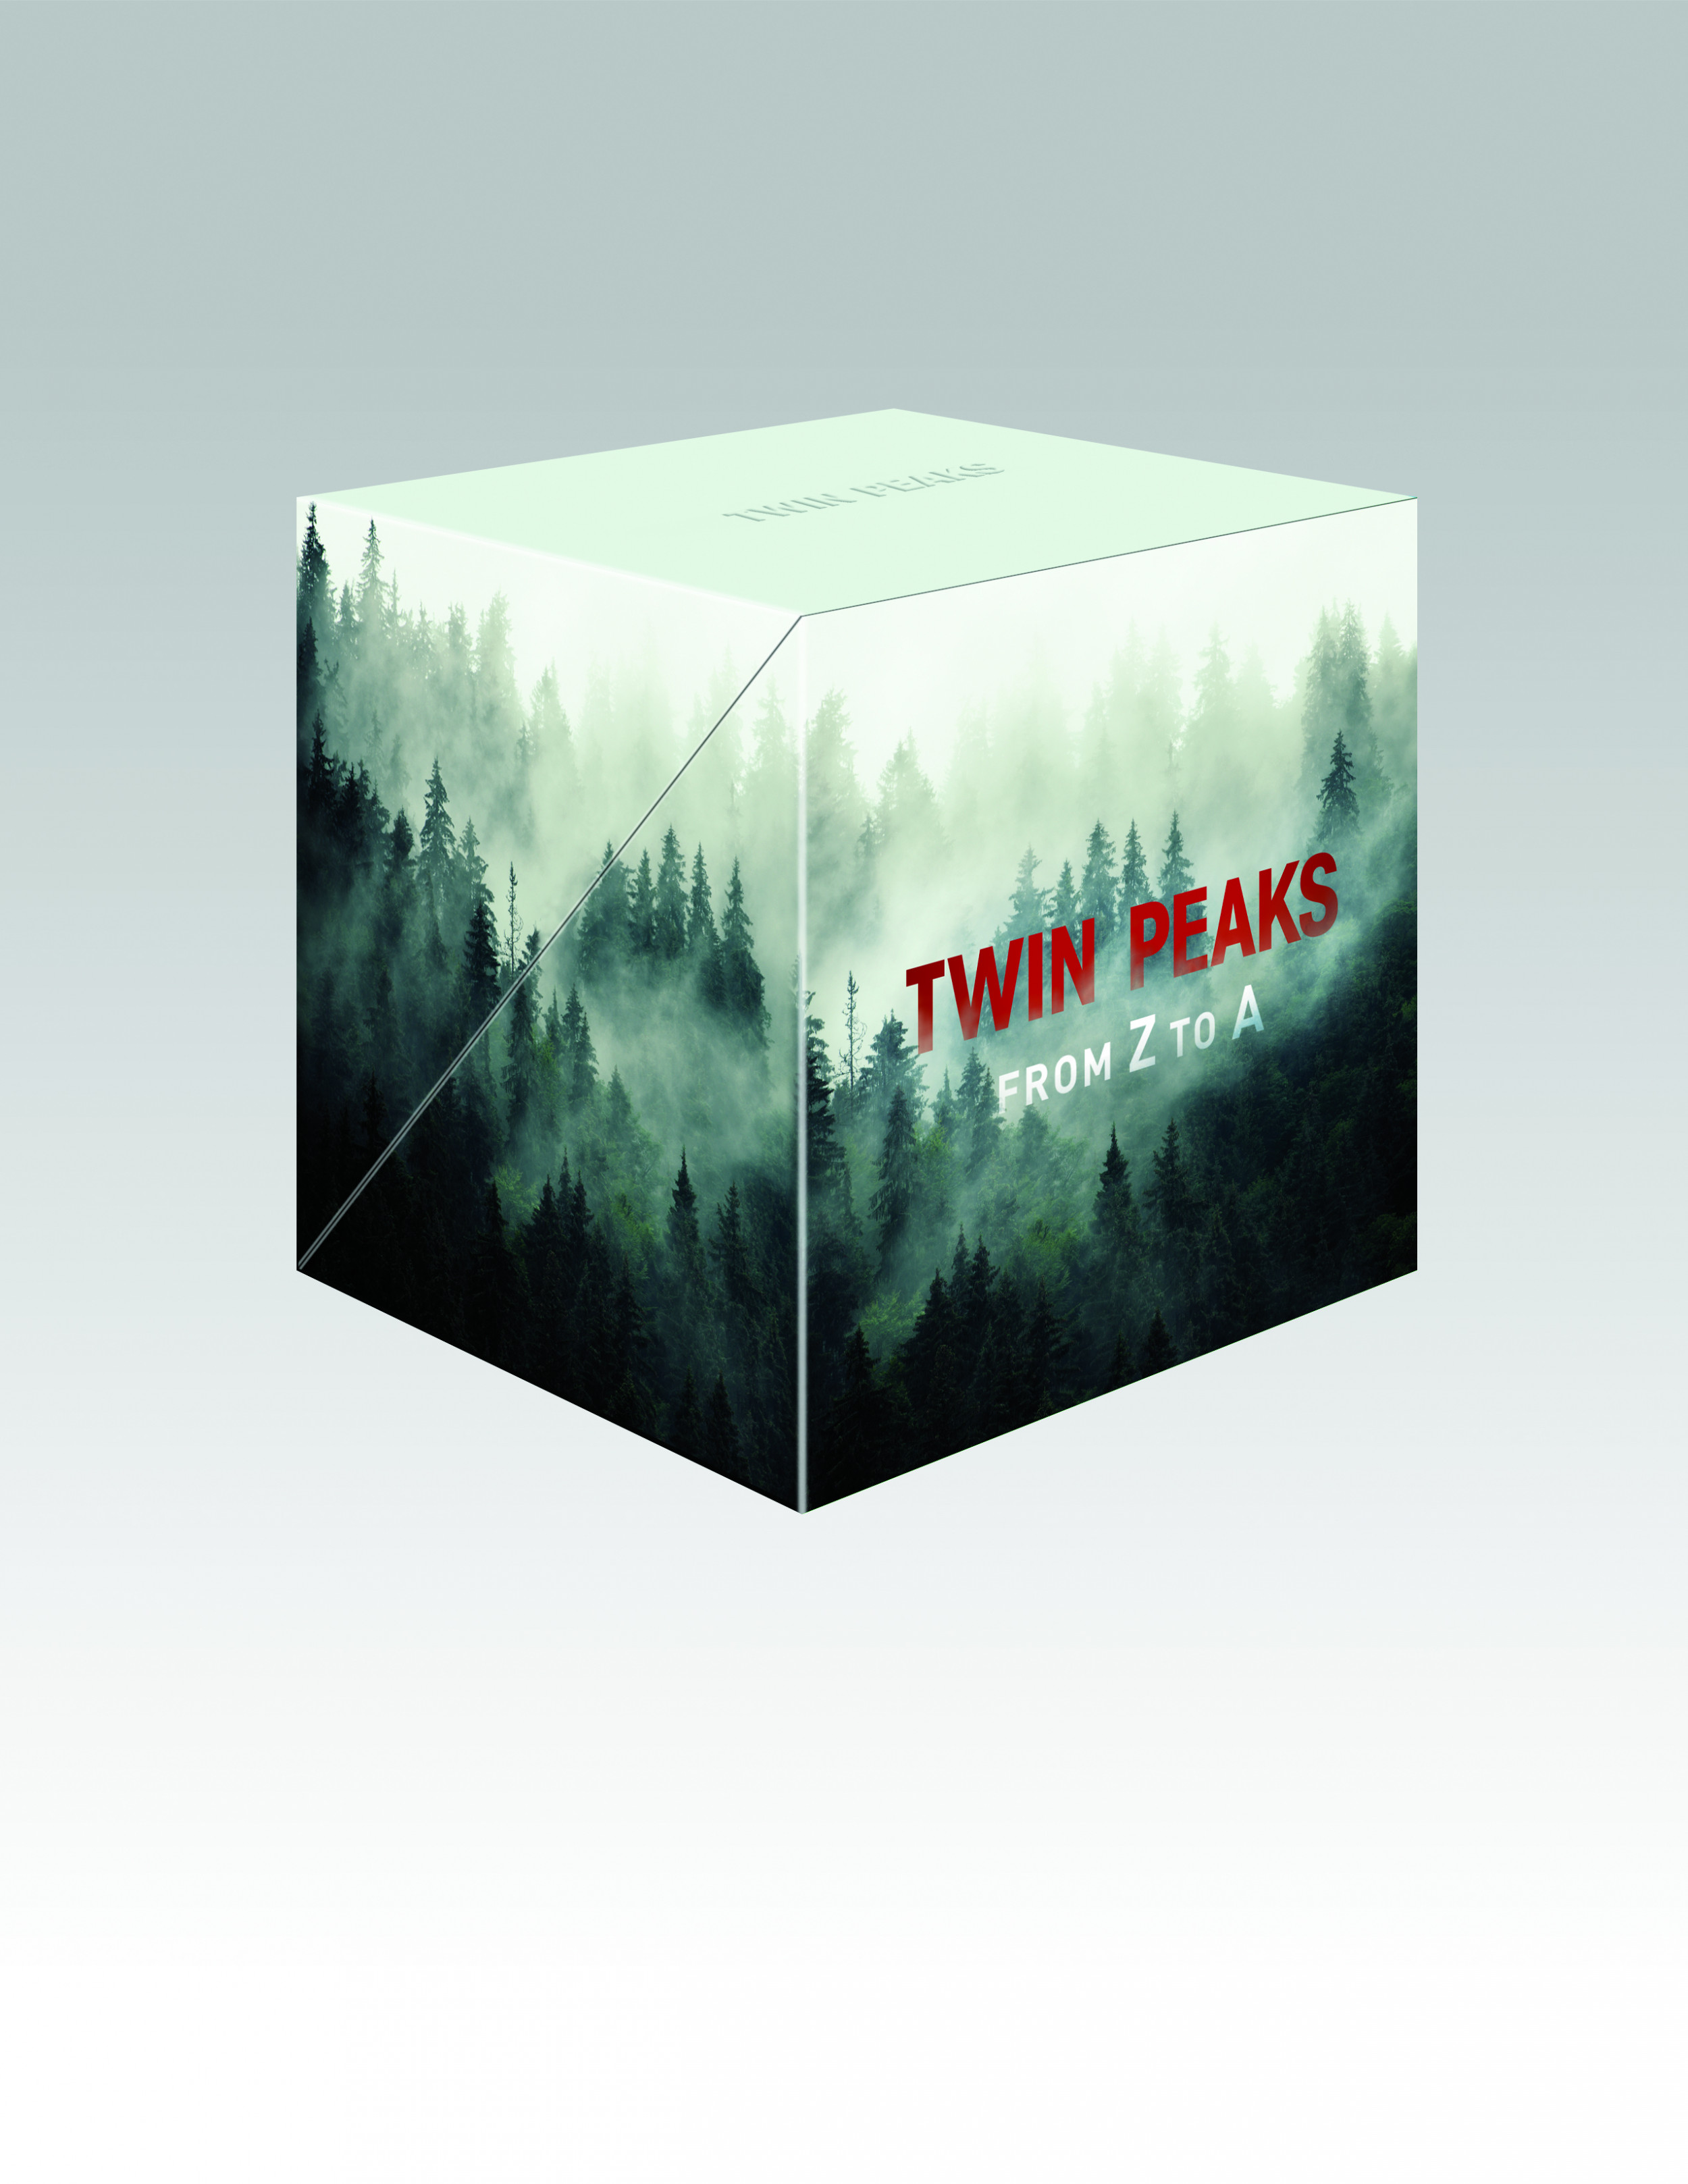 Twin Peaks Return Blu Ray - Twin Peaks From Z - HD Wallpaper 